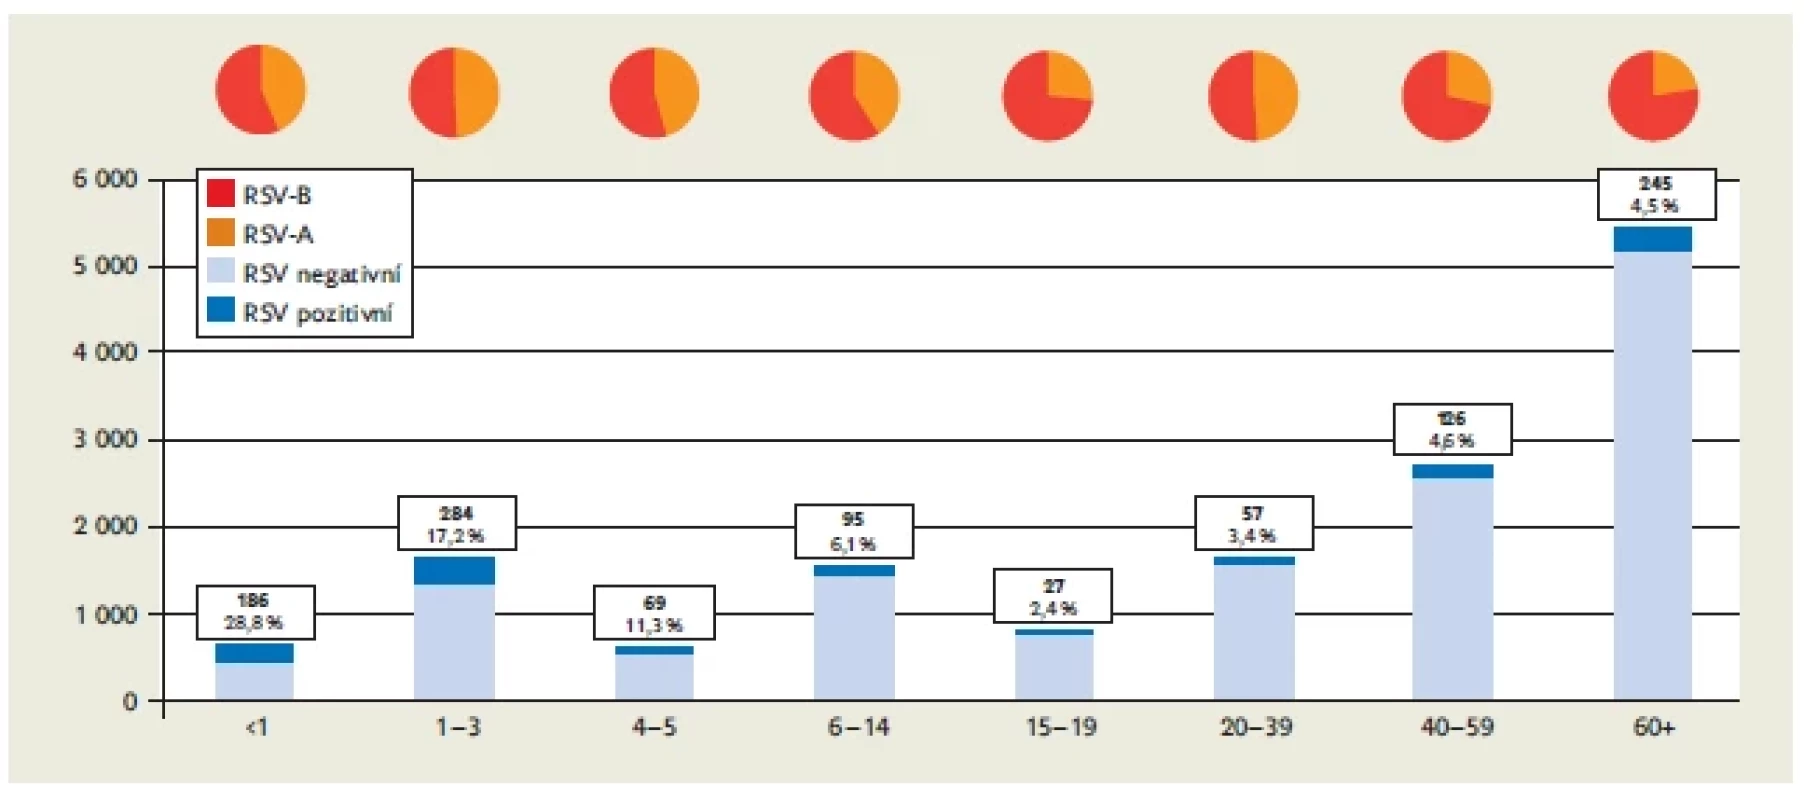 Detekce RSV
ve všech věkových
skupinách (procenta
a počty vzorků)
a poměr varianty
A a B mezi pozitivními
2012–2022
ve FN v Motole